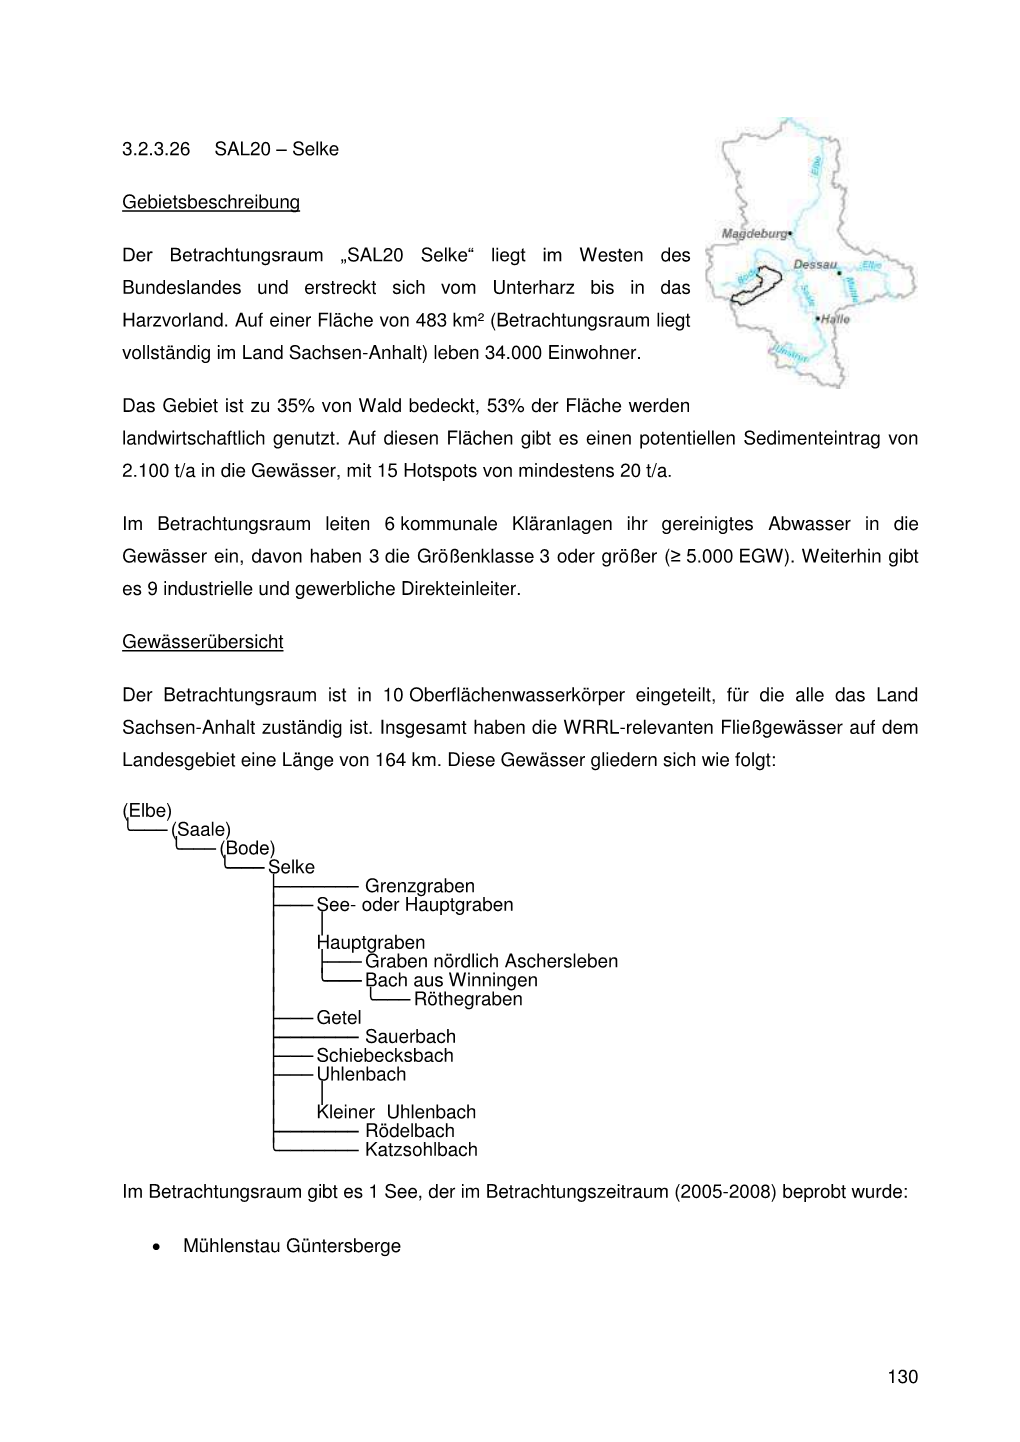 SAL20 Selke“ Liegt Im Westen Des Bundeslandes Und Erstreckt Sich Vom Unterharz Bis in Das Harzvorland